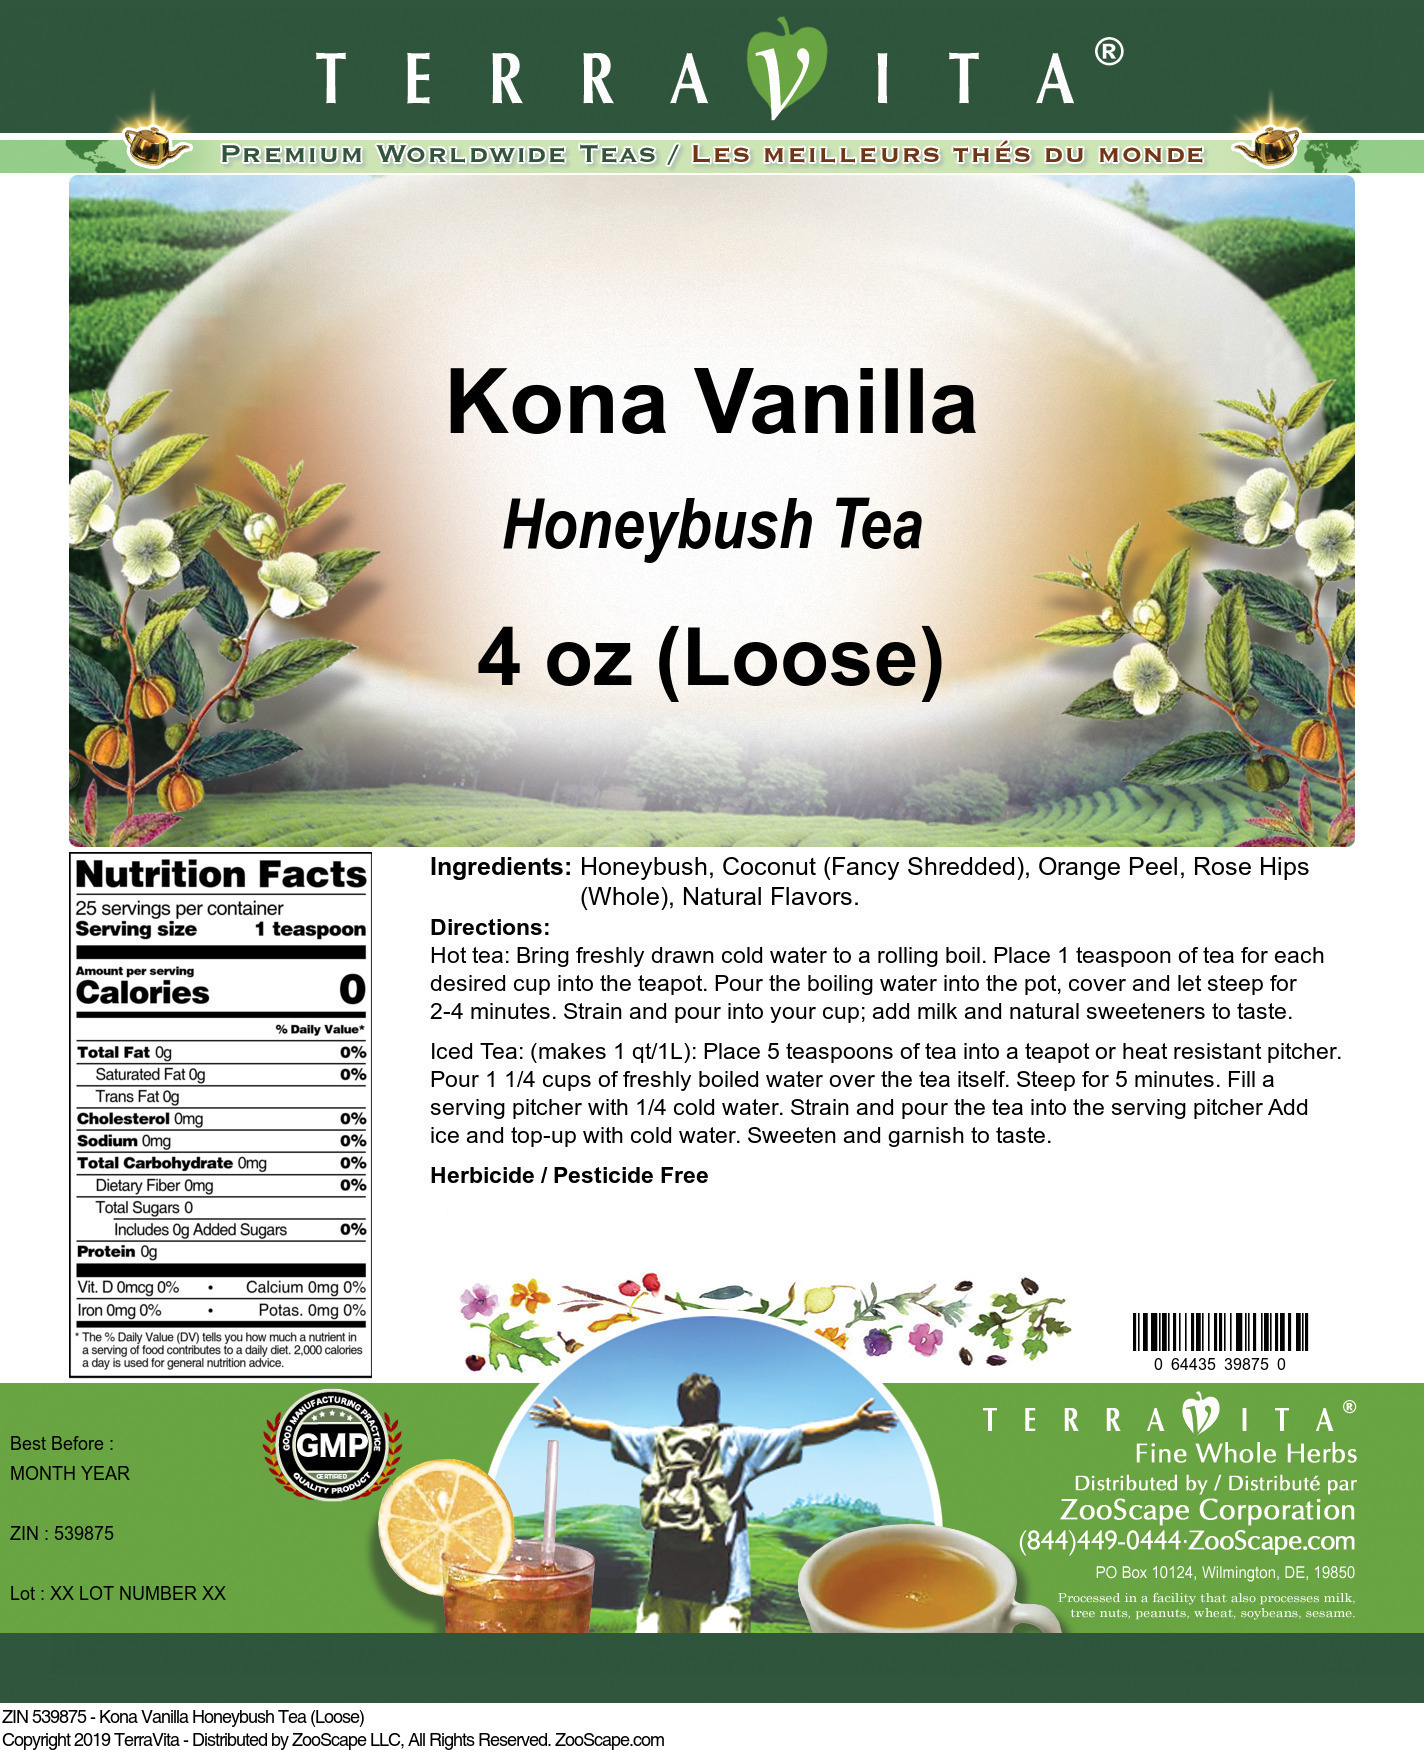 Kona Vanilla Honeybush Tea (Loose) - Label